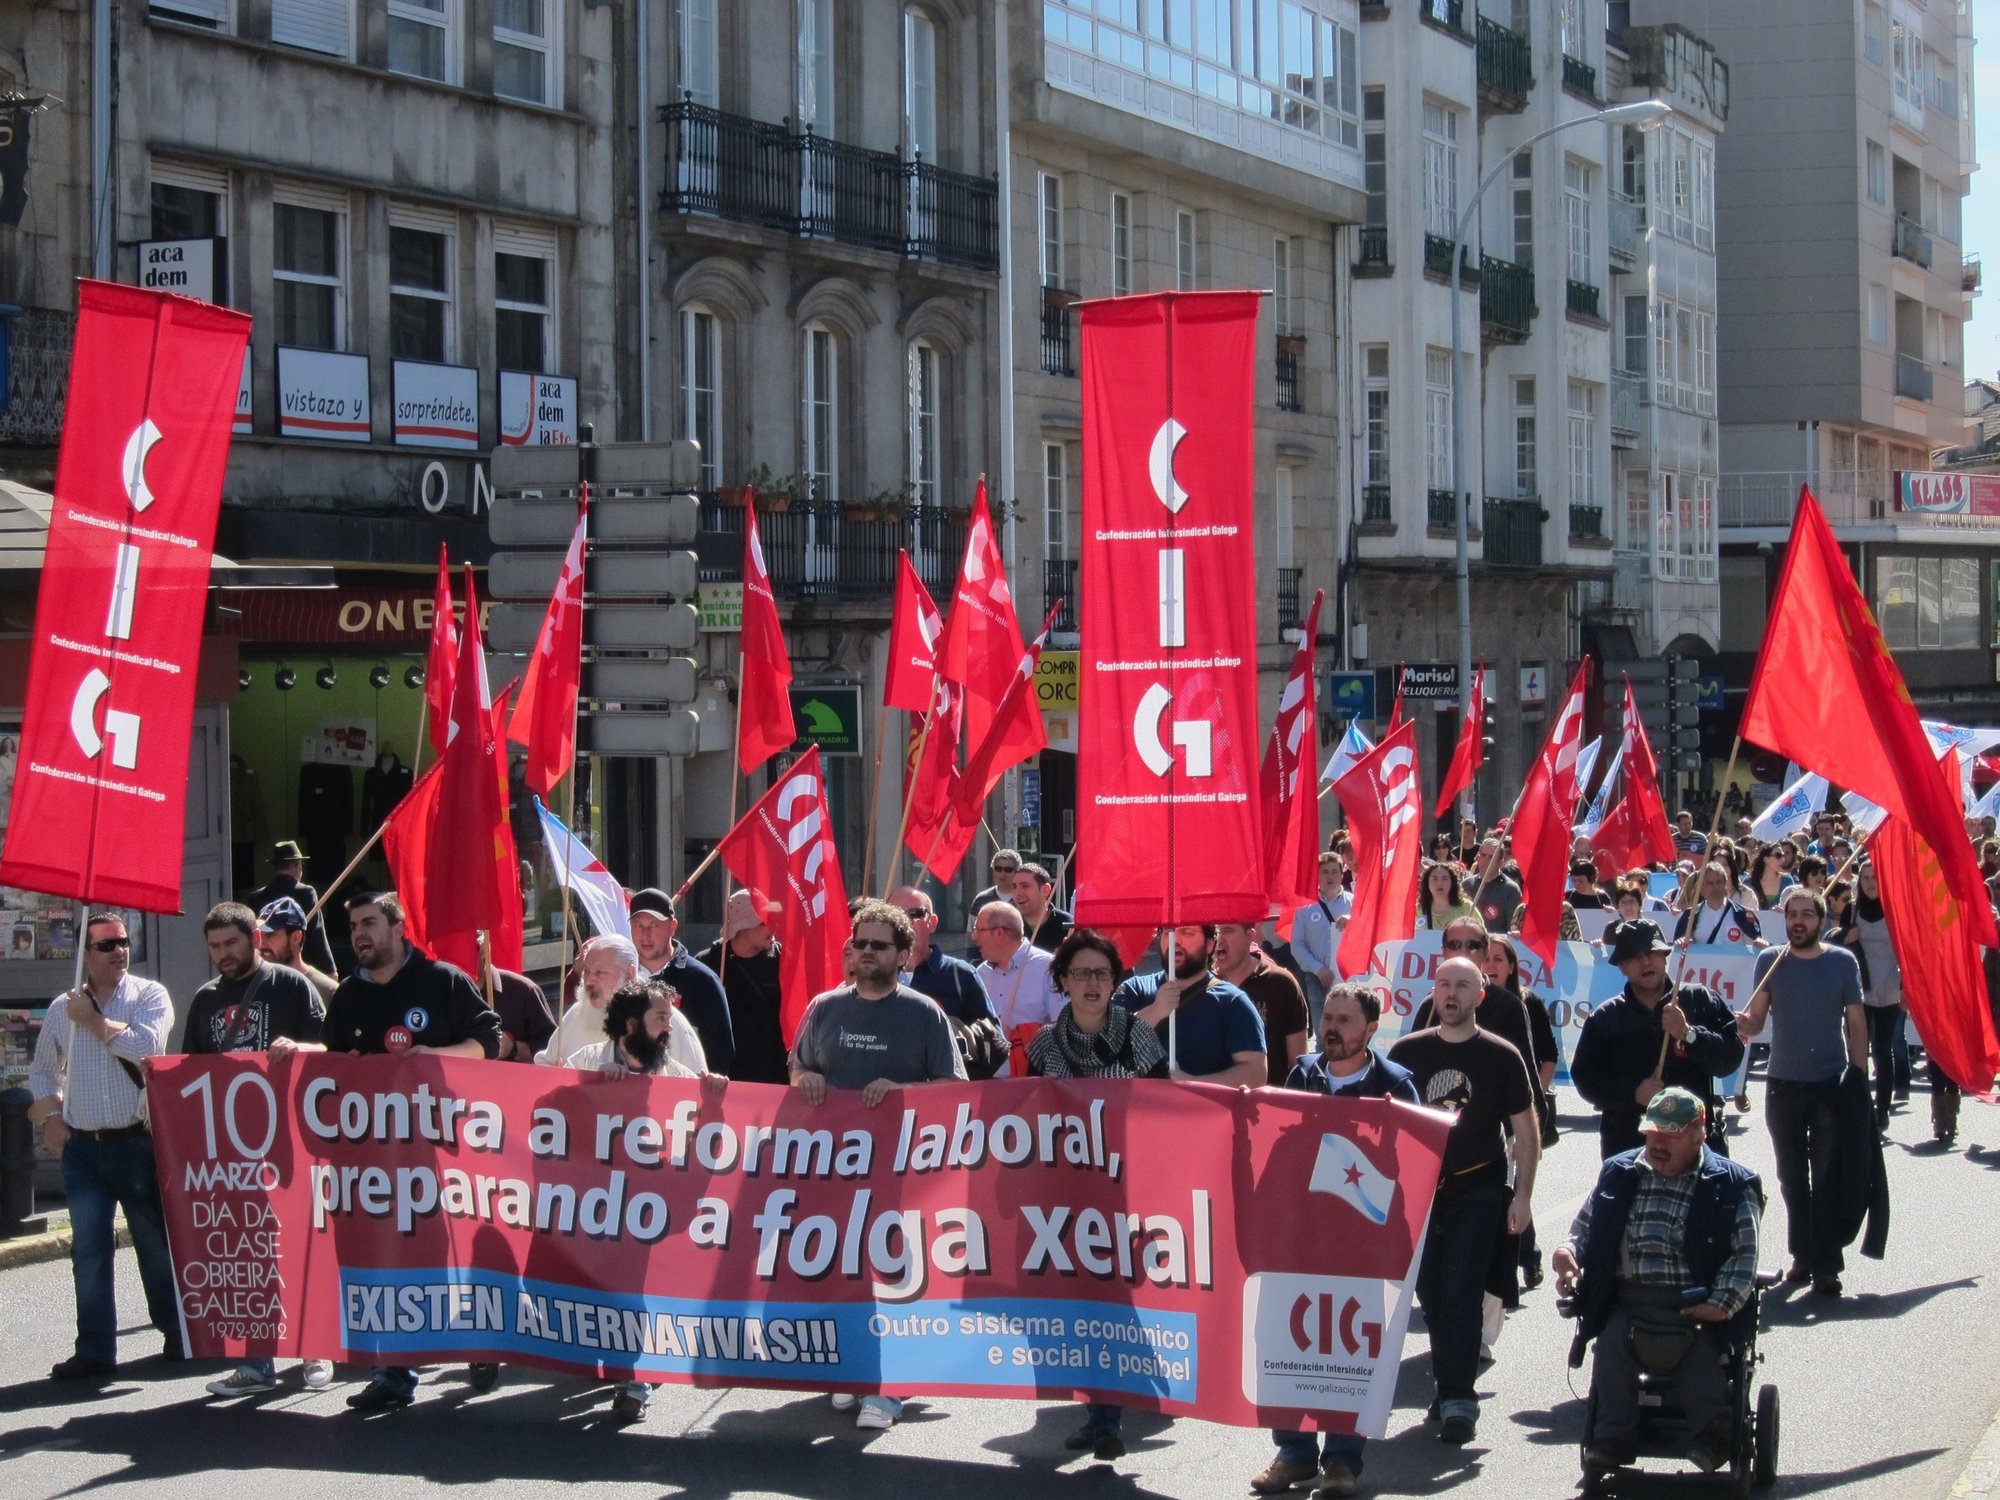 Miles de personas protestan en las ciudades gallegas contra la reforma laboral y llaman a la huelga